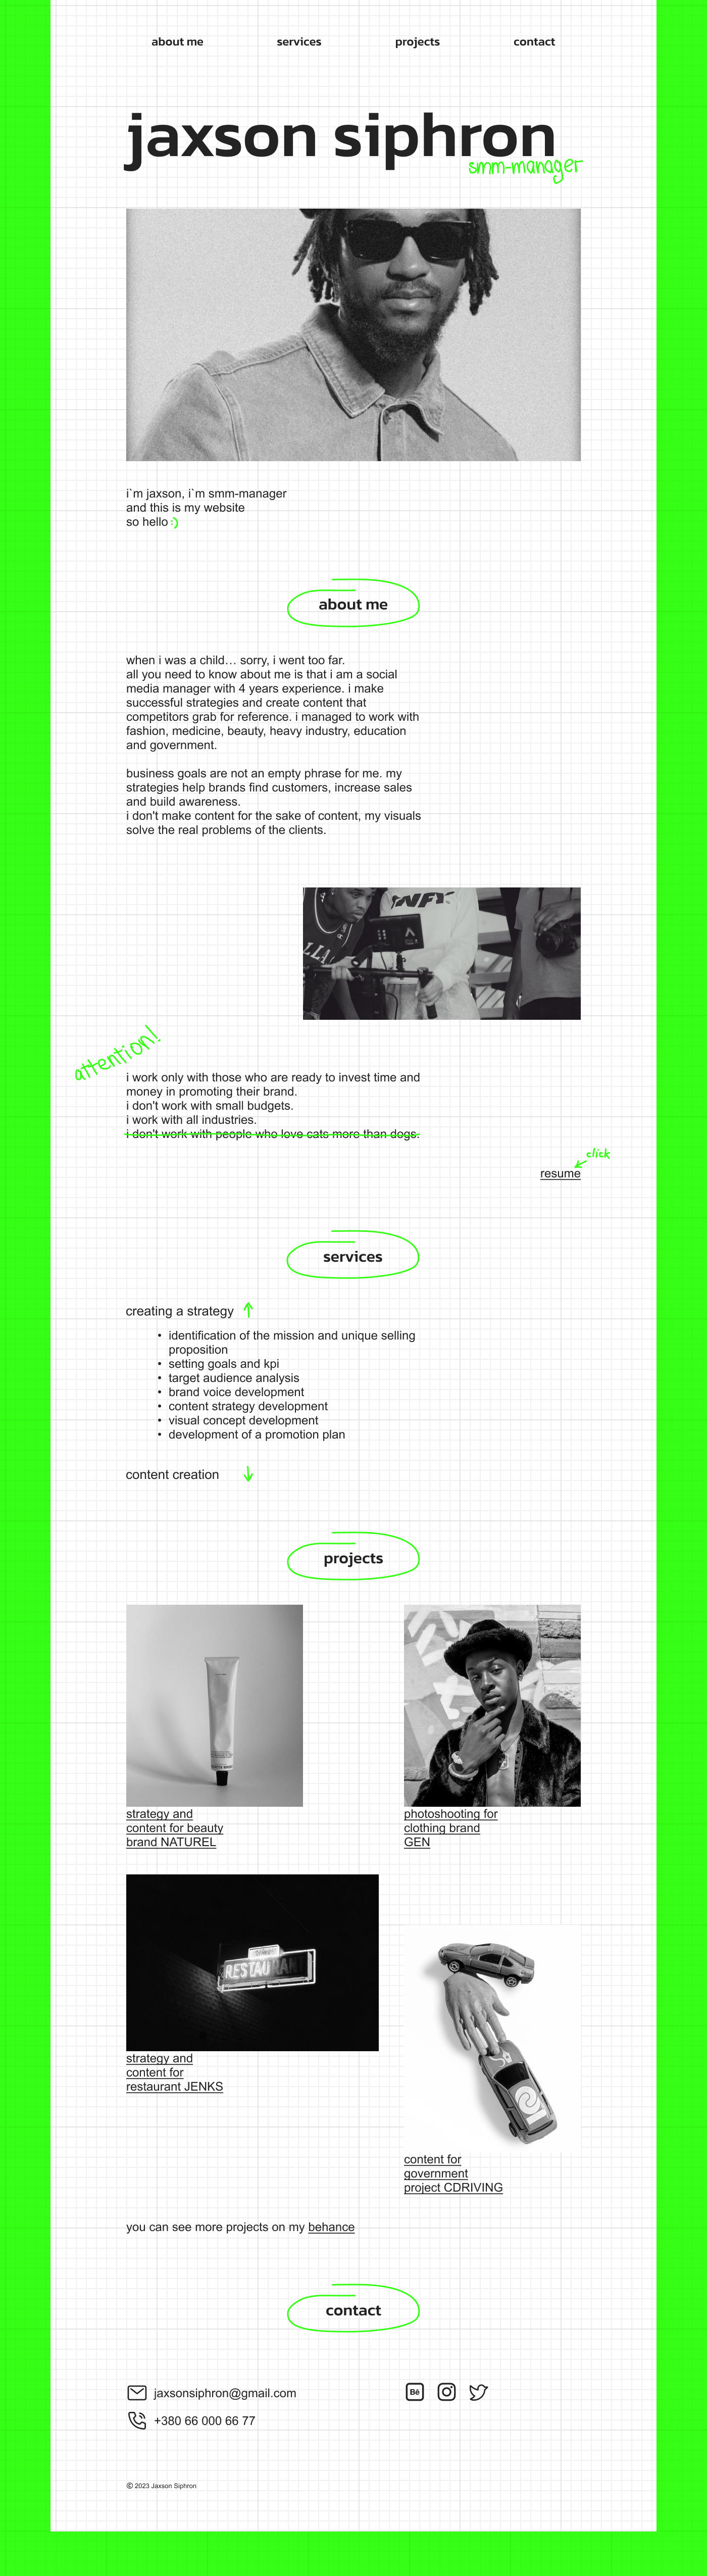 Brutalism Figma landing page minimaldesign Portfolio Design portfolio website ui design UI/UX Website